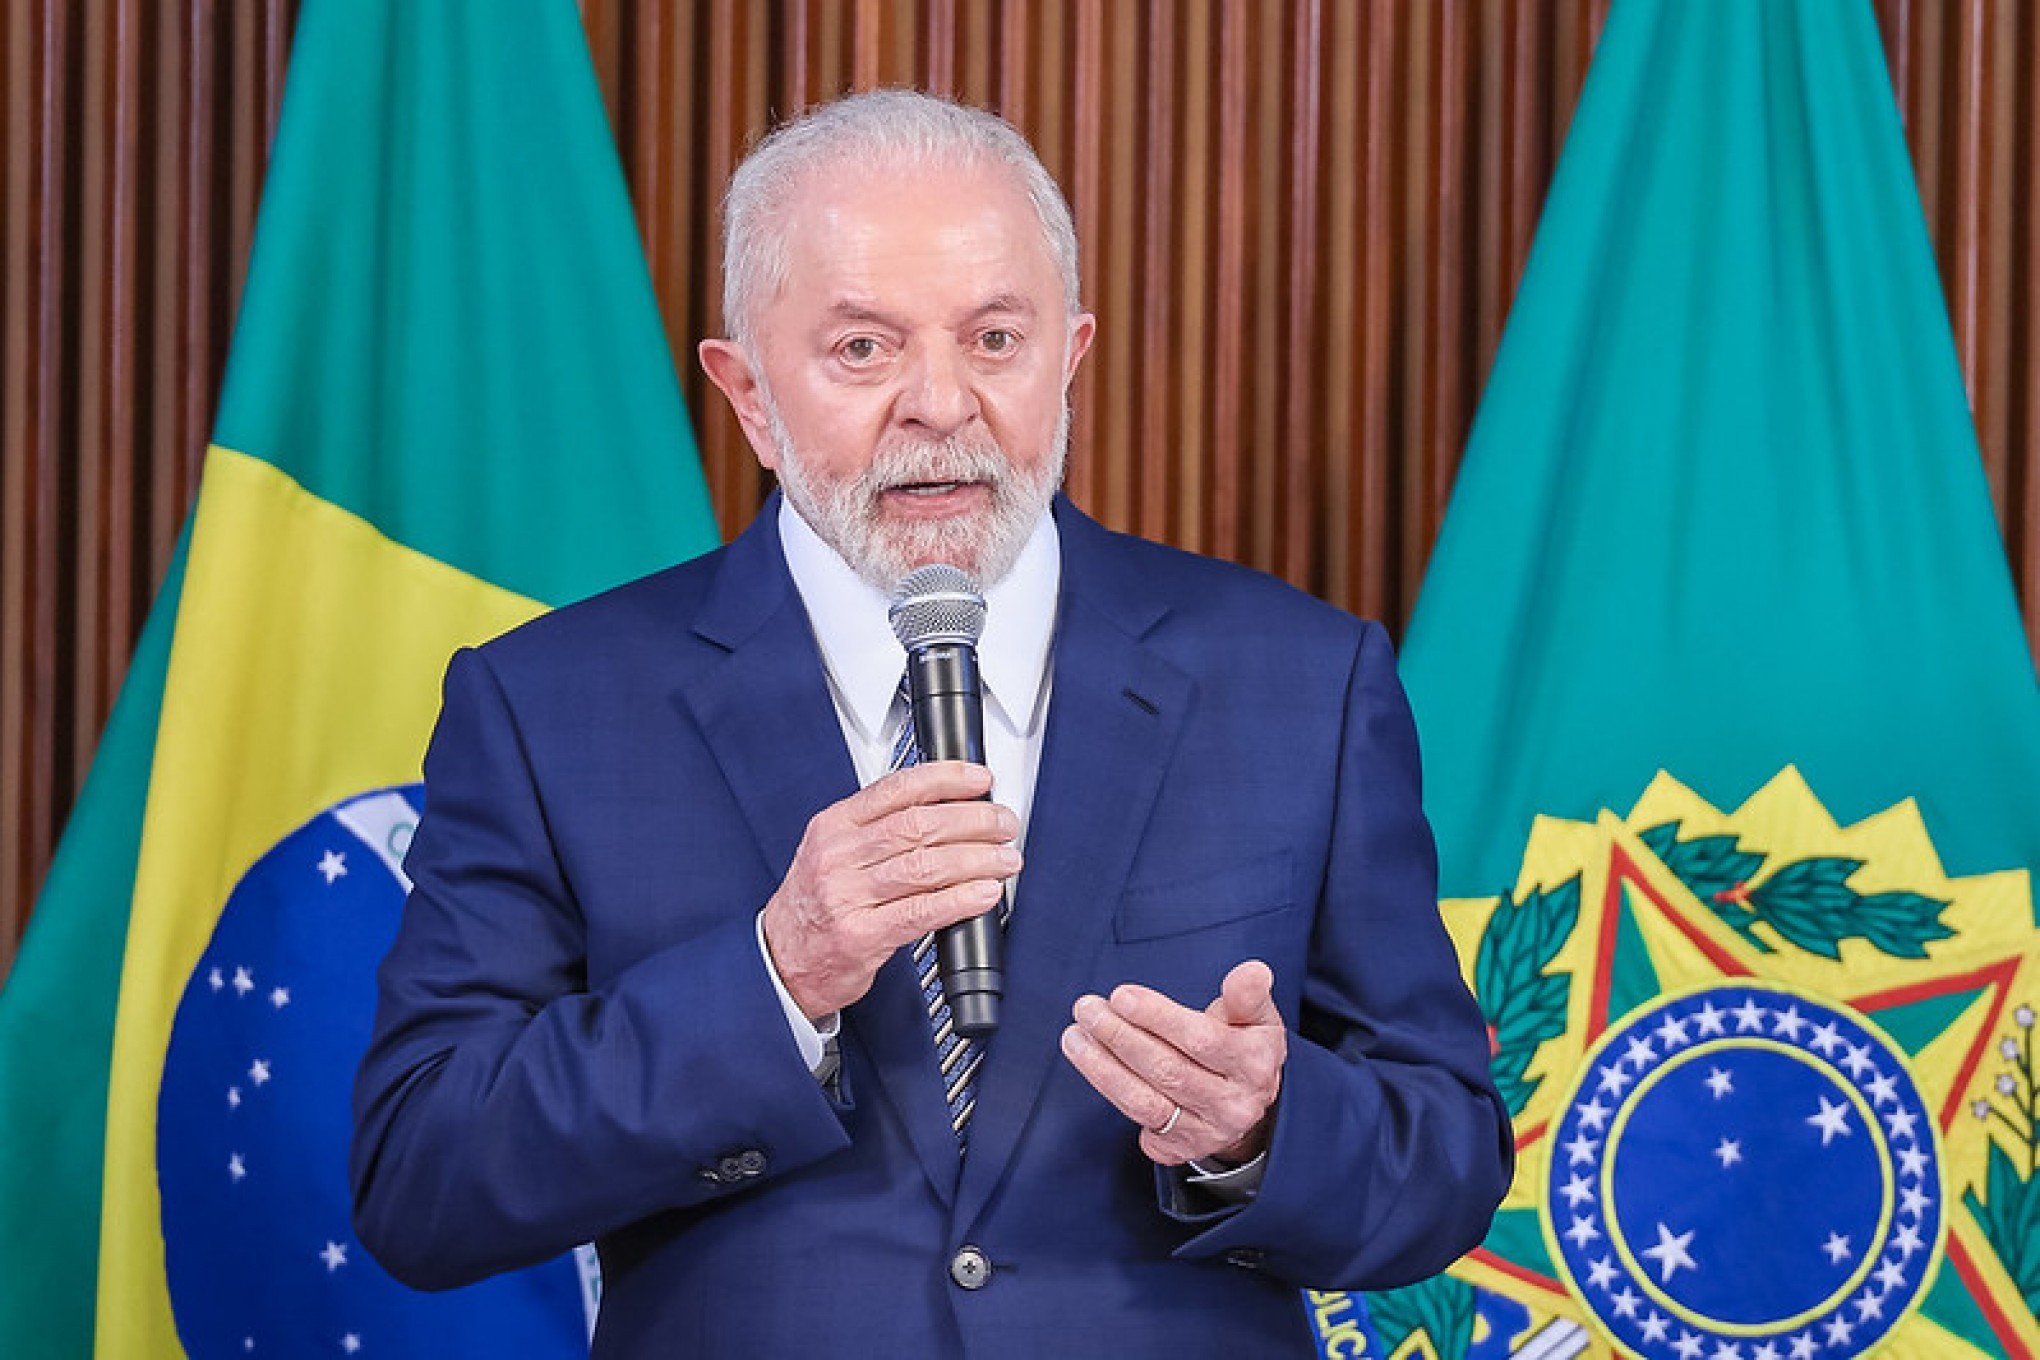 IMPOSTO DE RENDA: Lula volta a dizer que isentará quem ganha até R$ 5 mil